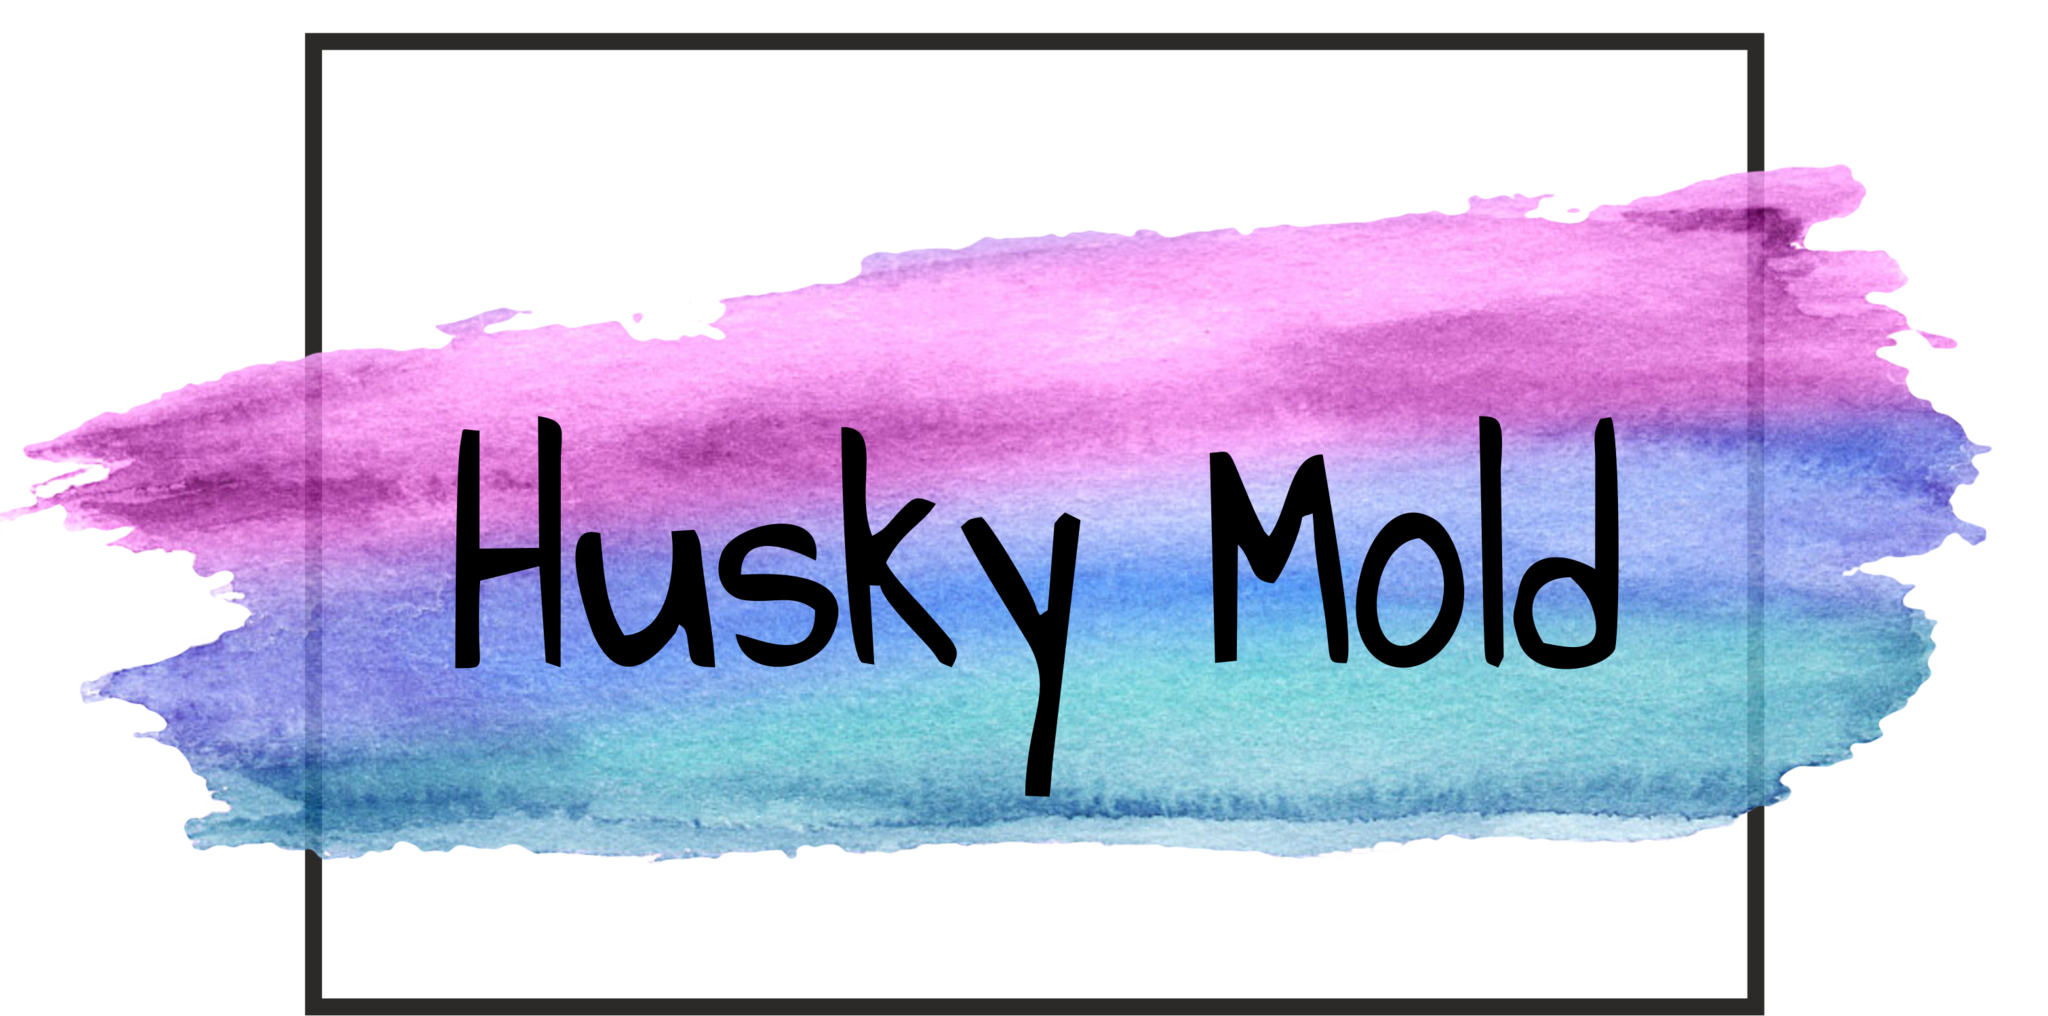 Формы от Husky mold